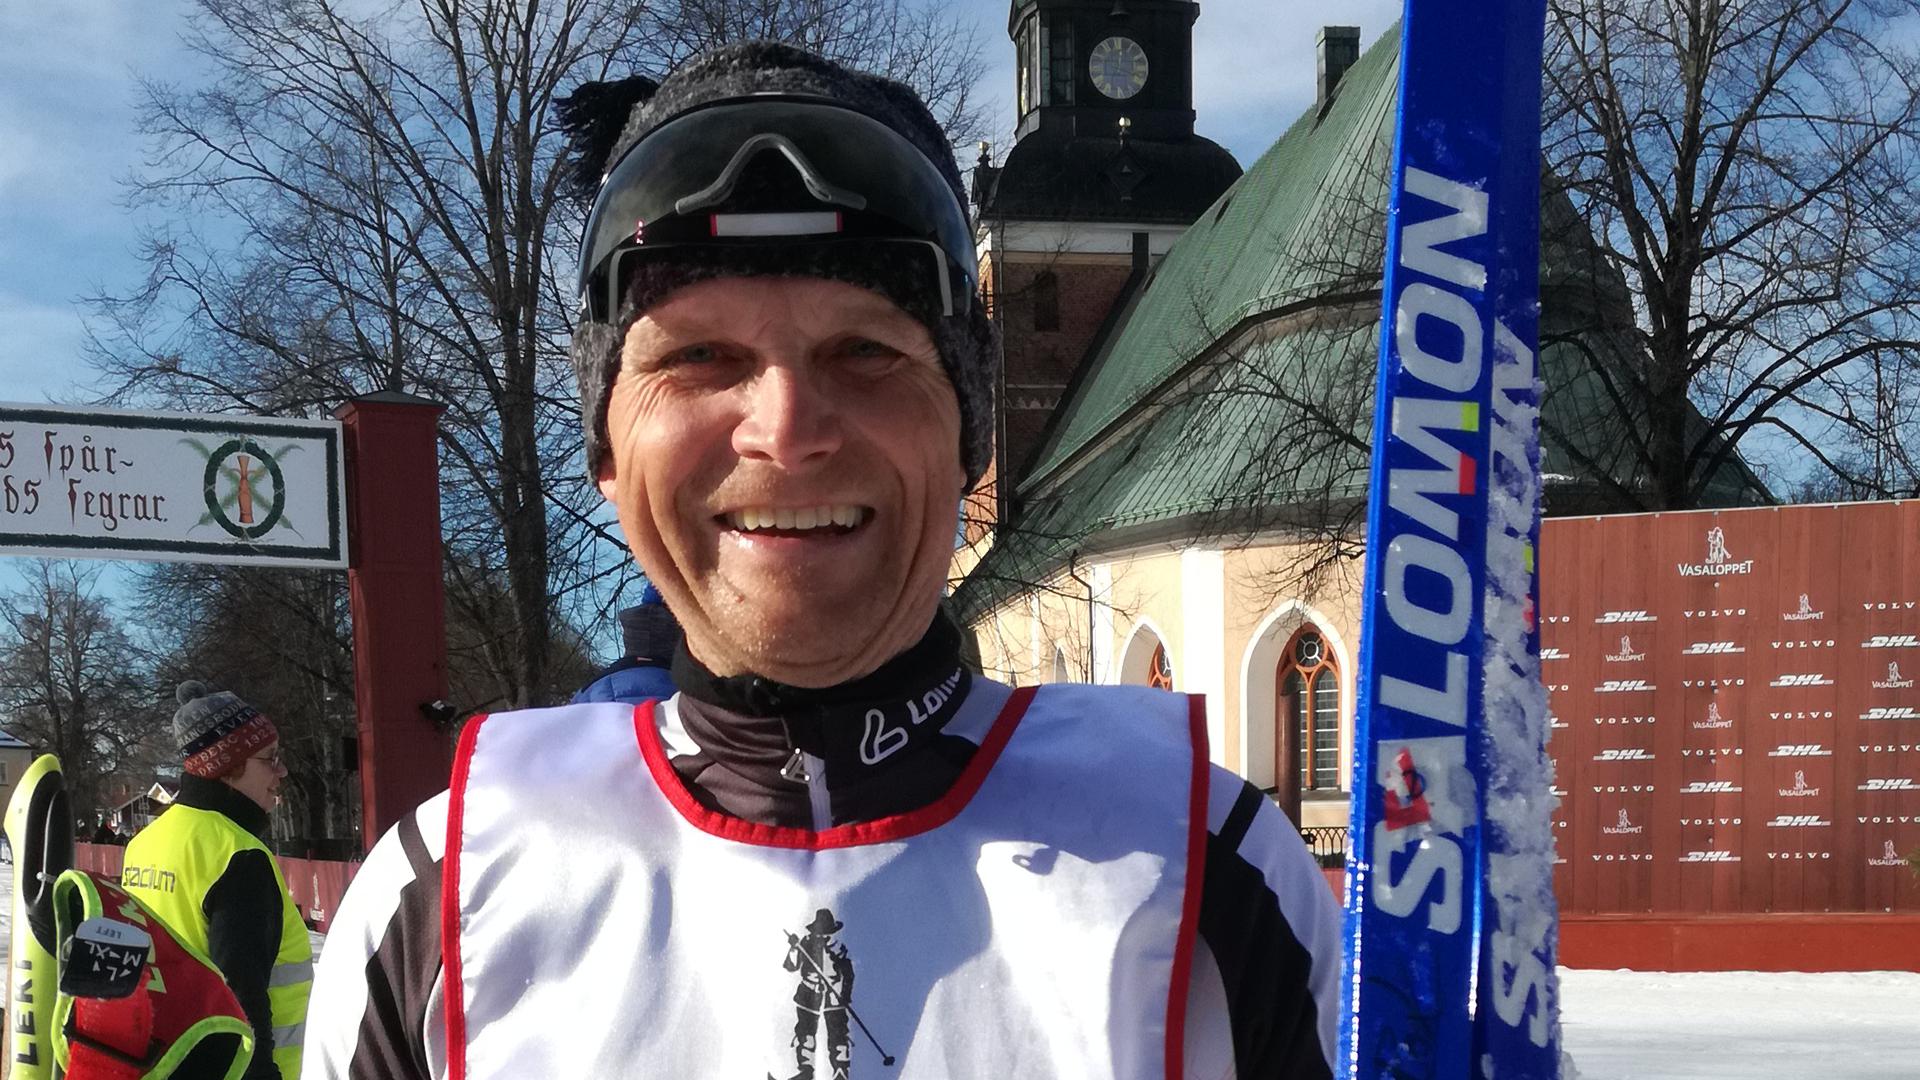 Glücklich im Ziel angekommen: Roland Käuflein aus Haueneberstein beim Wasalauf in Schweden.